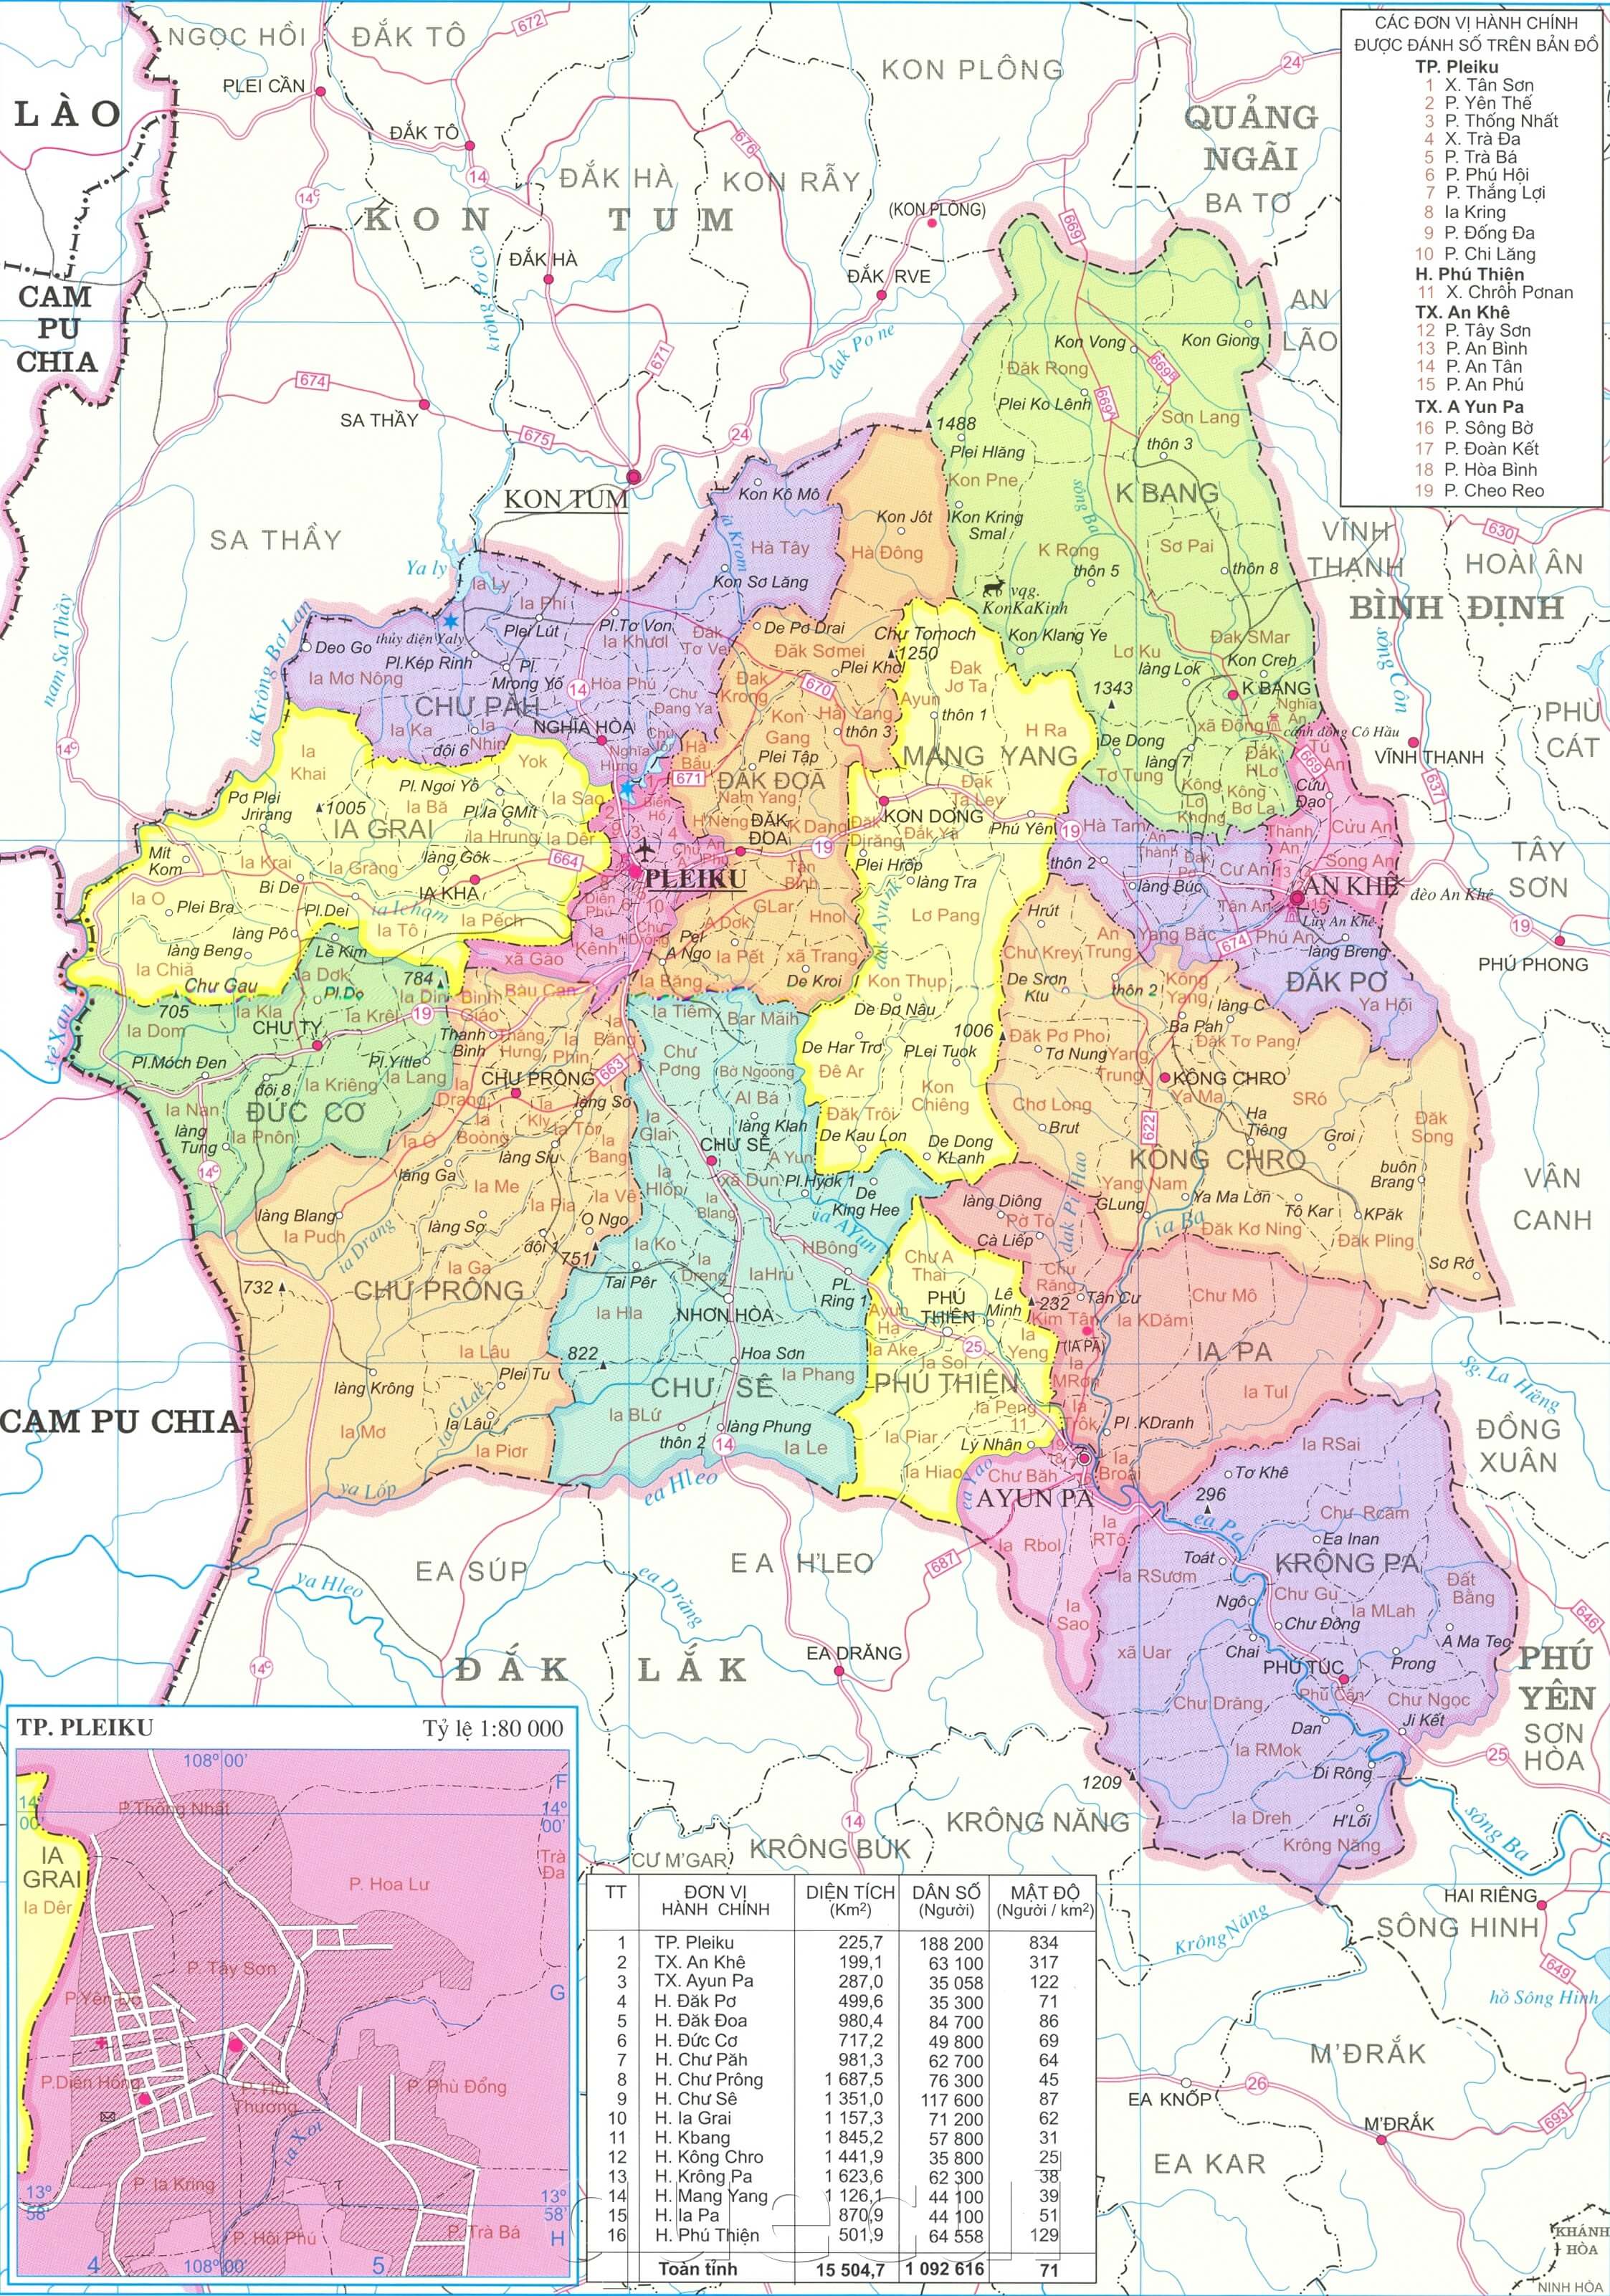 Bản đồ tỉnh Gia Lai: Khám phá tỉnh Gia Lai một cách mới lạ với bản đồ hiện đại và chính xác nhất. Tìm hiểu về những địa danh nổi tiếng của đất đỏ Tây Nguyên và dẫn lối cho bản thân trên mọi ngã rẽ, đường mòn.